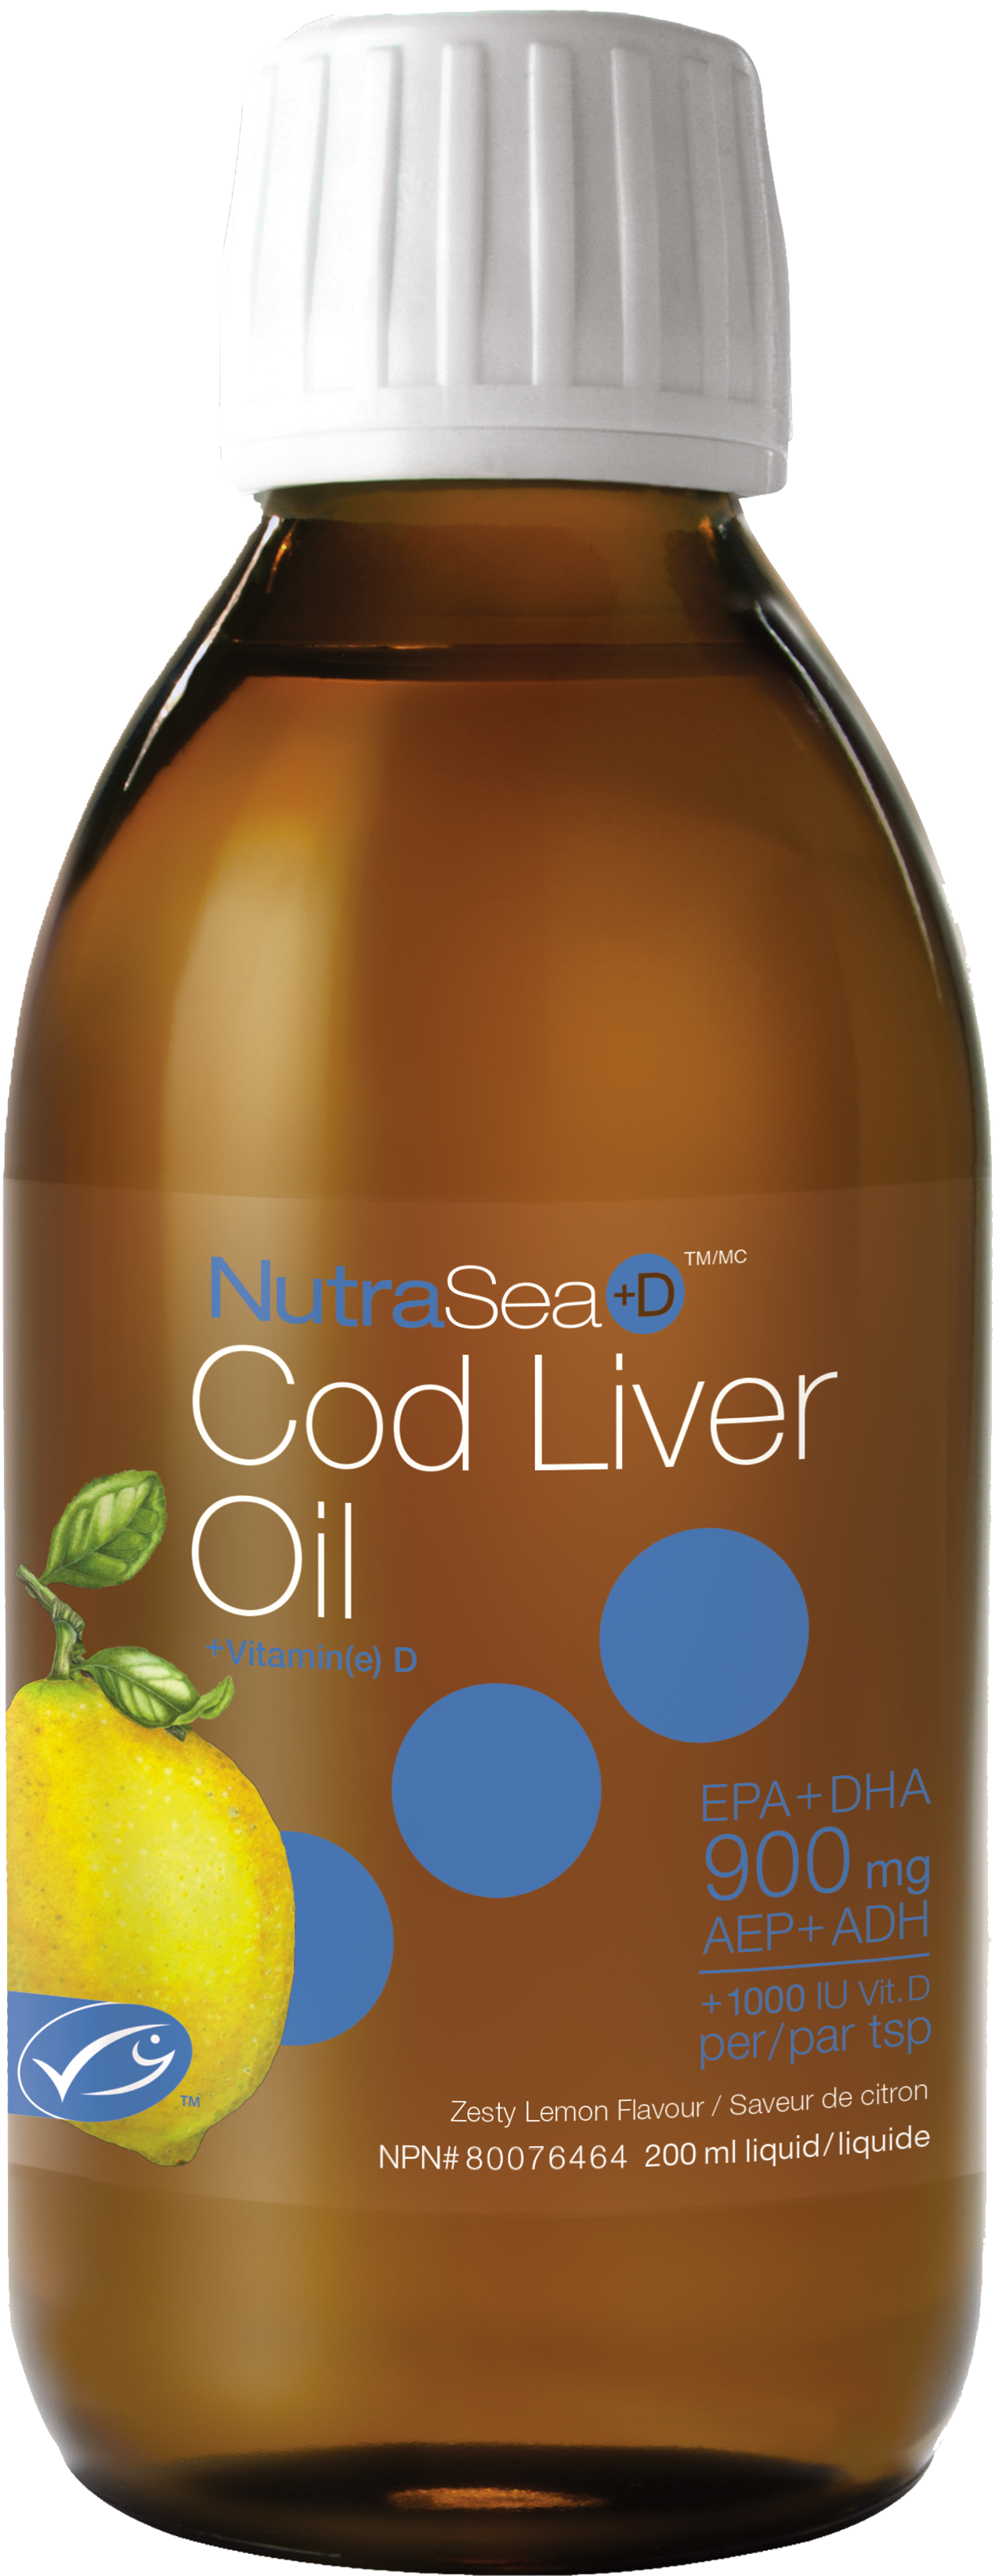 Nutrasea +D Cod Liver Oil Zesty Lemon Flavour 200ml